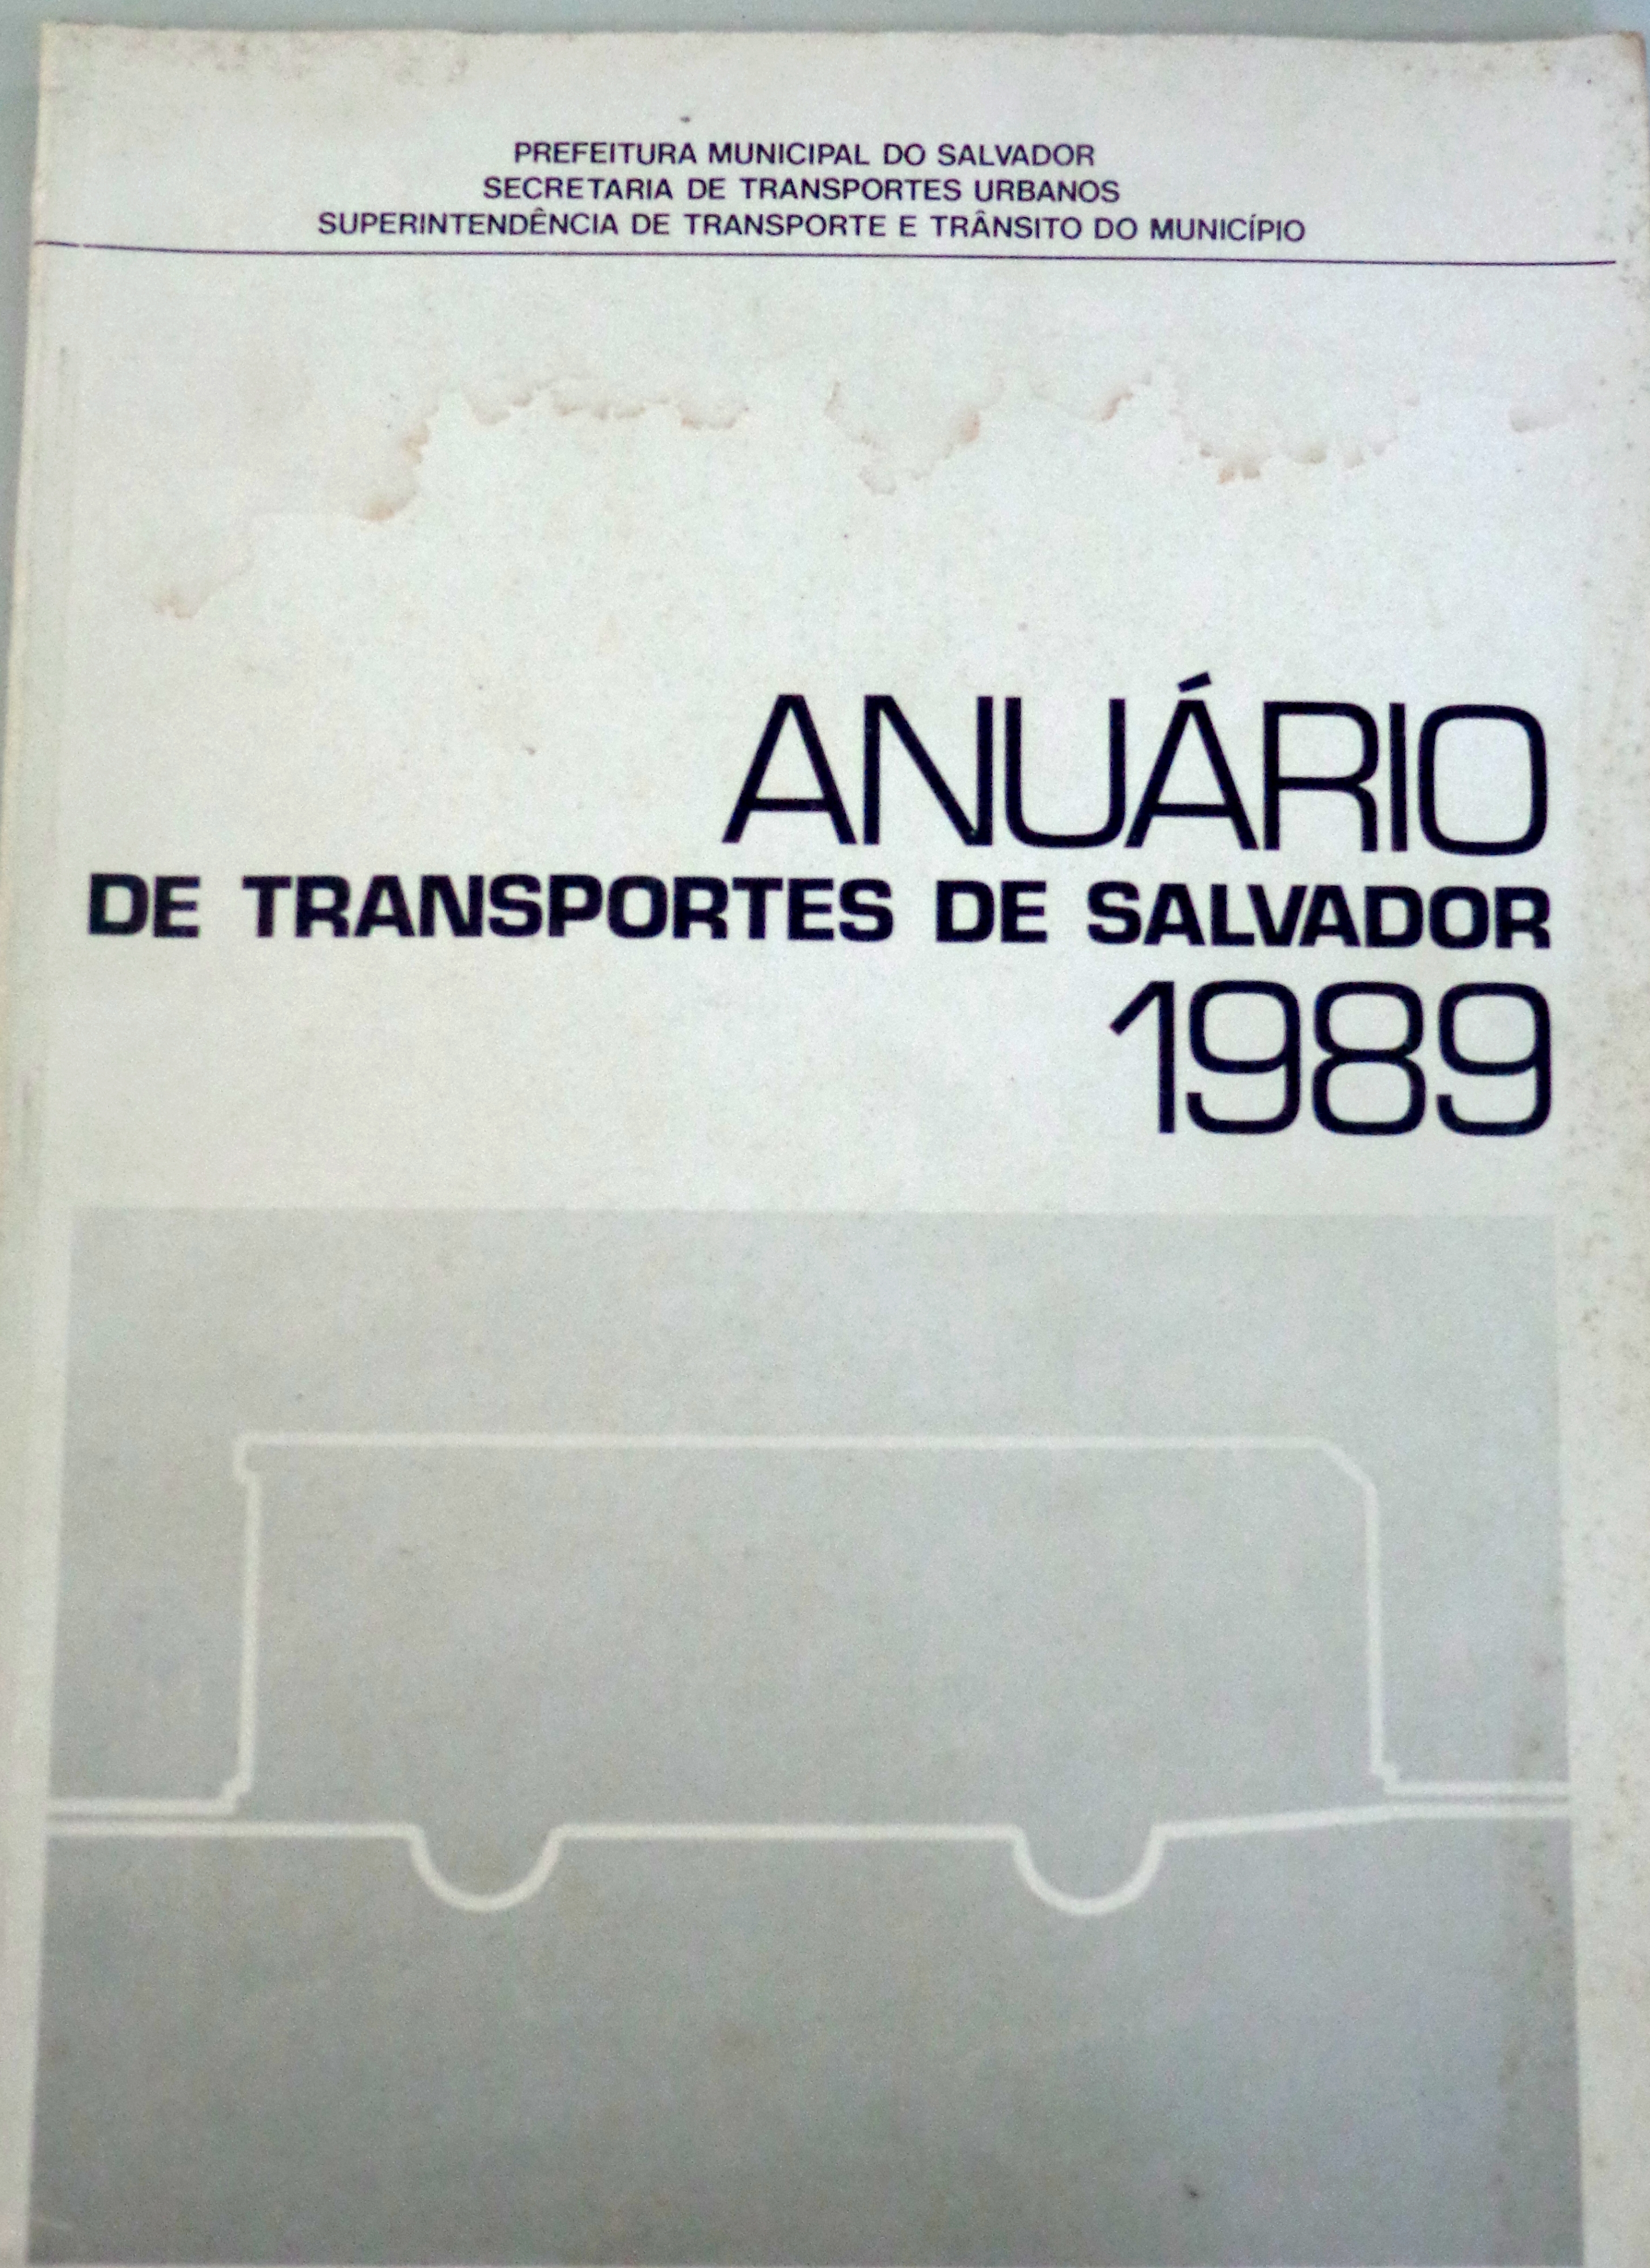 Anuário do transporte urbano de Salvador em 1989, nossa fonte de informações